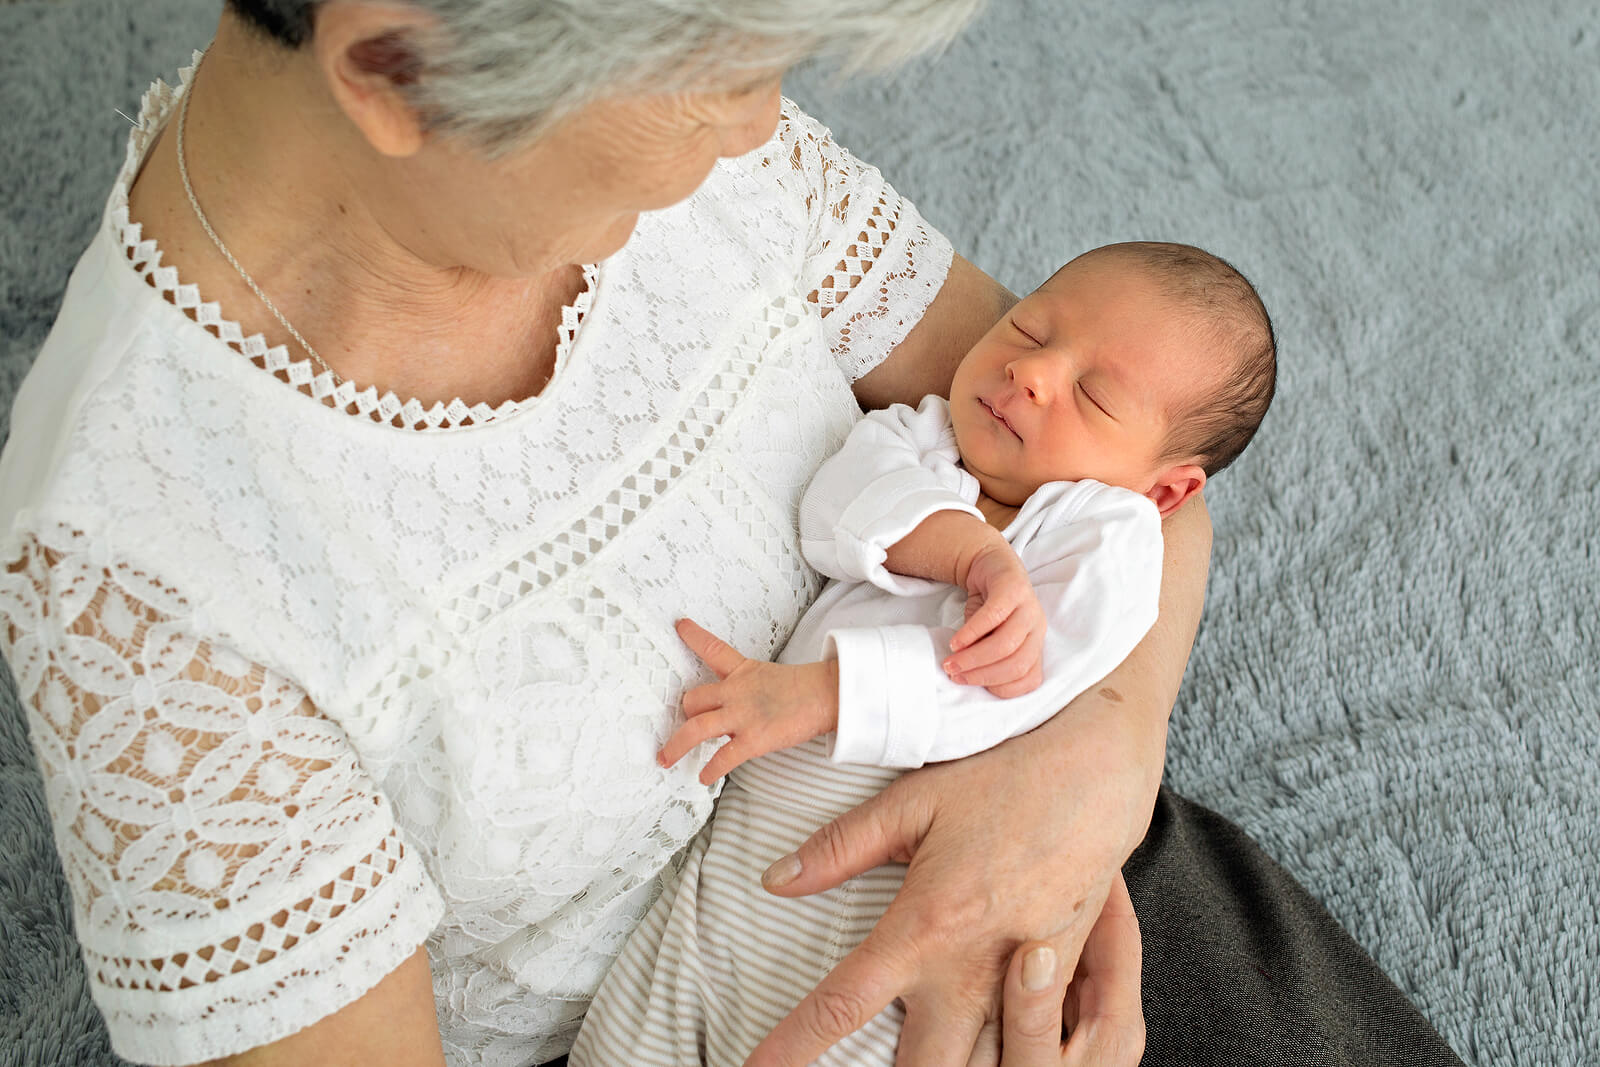 Abuela con su nieto recién nacido en brazos.